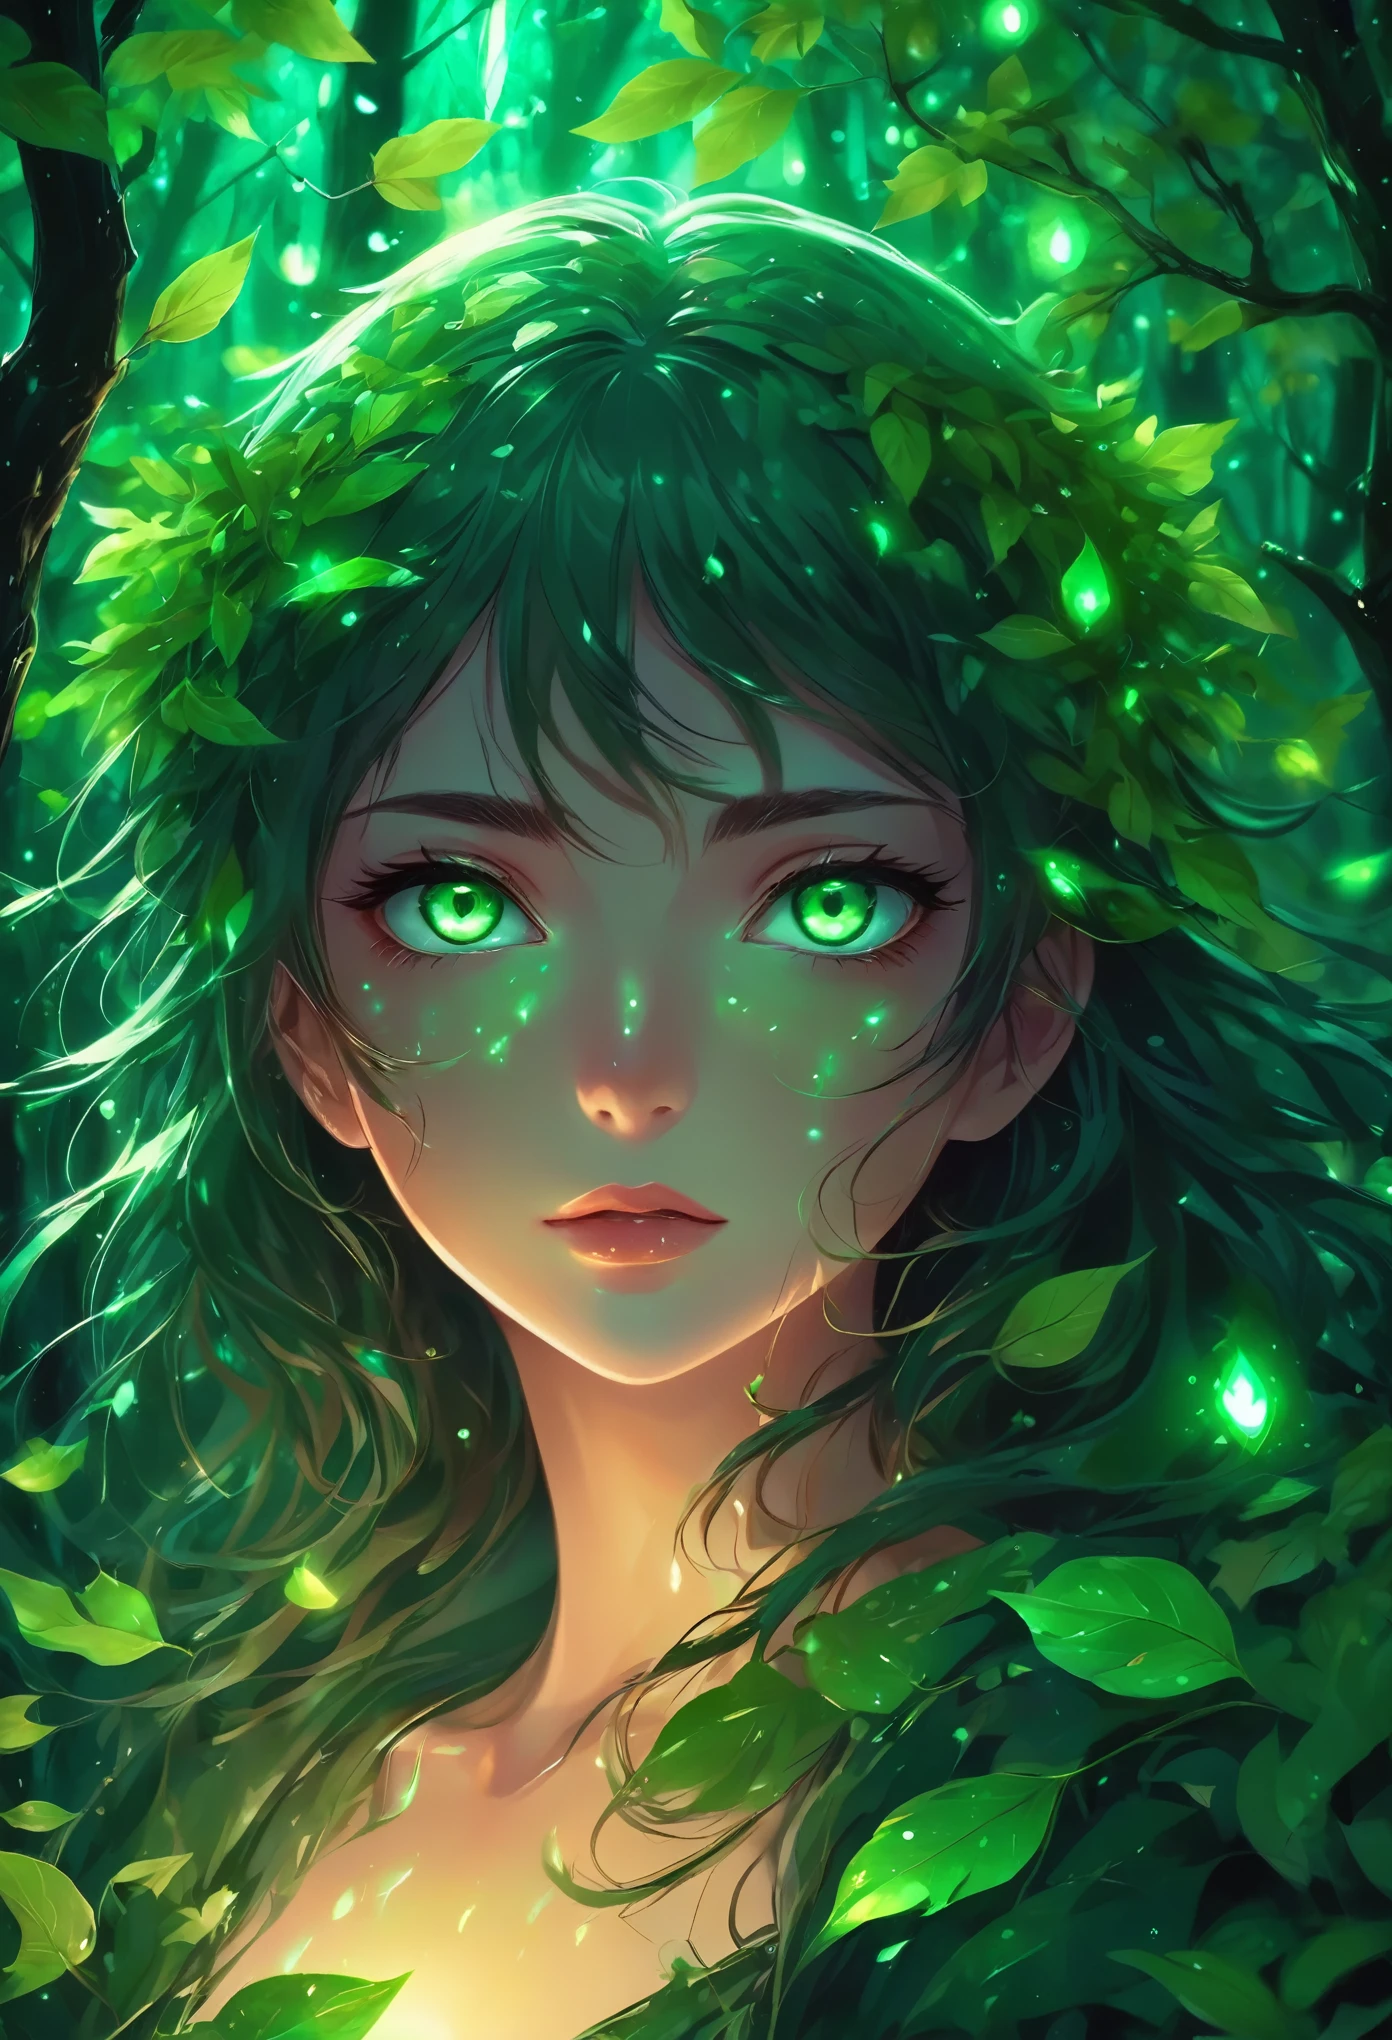 黑暗中被树叶包围的绿眼睛动漫女孩, green 发光的眼睛, with 发光的眼睛, magical 发光的眼睛, anime lush john 8千 woods, 暗色发光雨, 发光的眼睛 everywhere, eerie 发光的眼睛, 发光的眼睛, 眼睛发光, numerous dimly 发光的眼睛, 动漫风格. 8千, 发光的绿眼睛, 发光的魔法眼睛, very 发光的眼睛